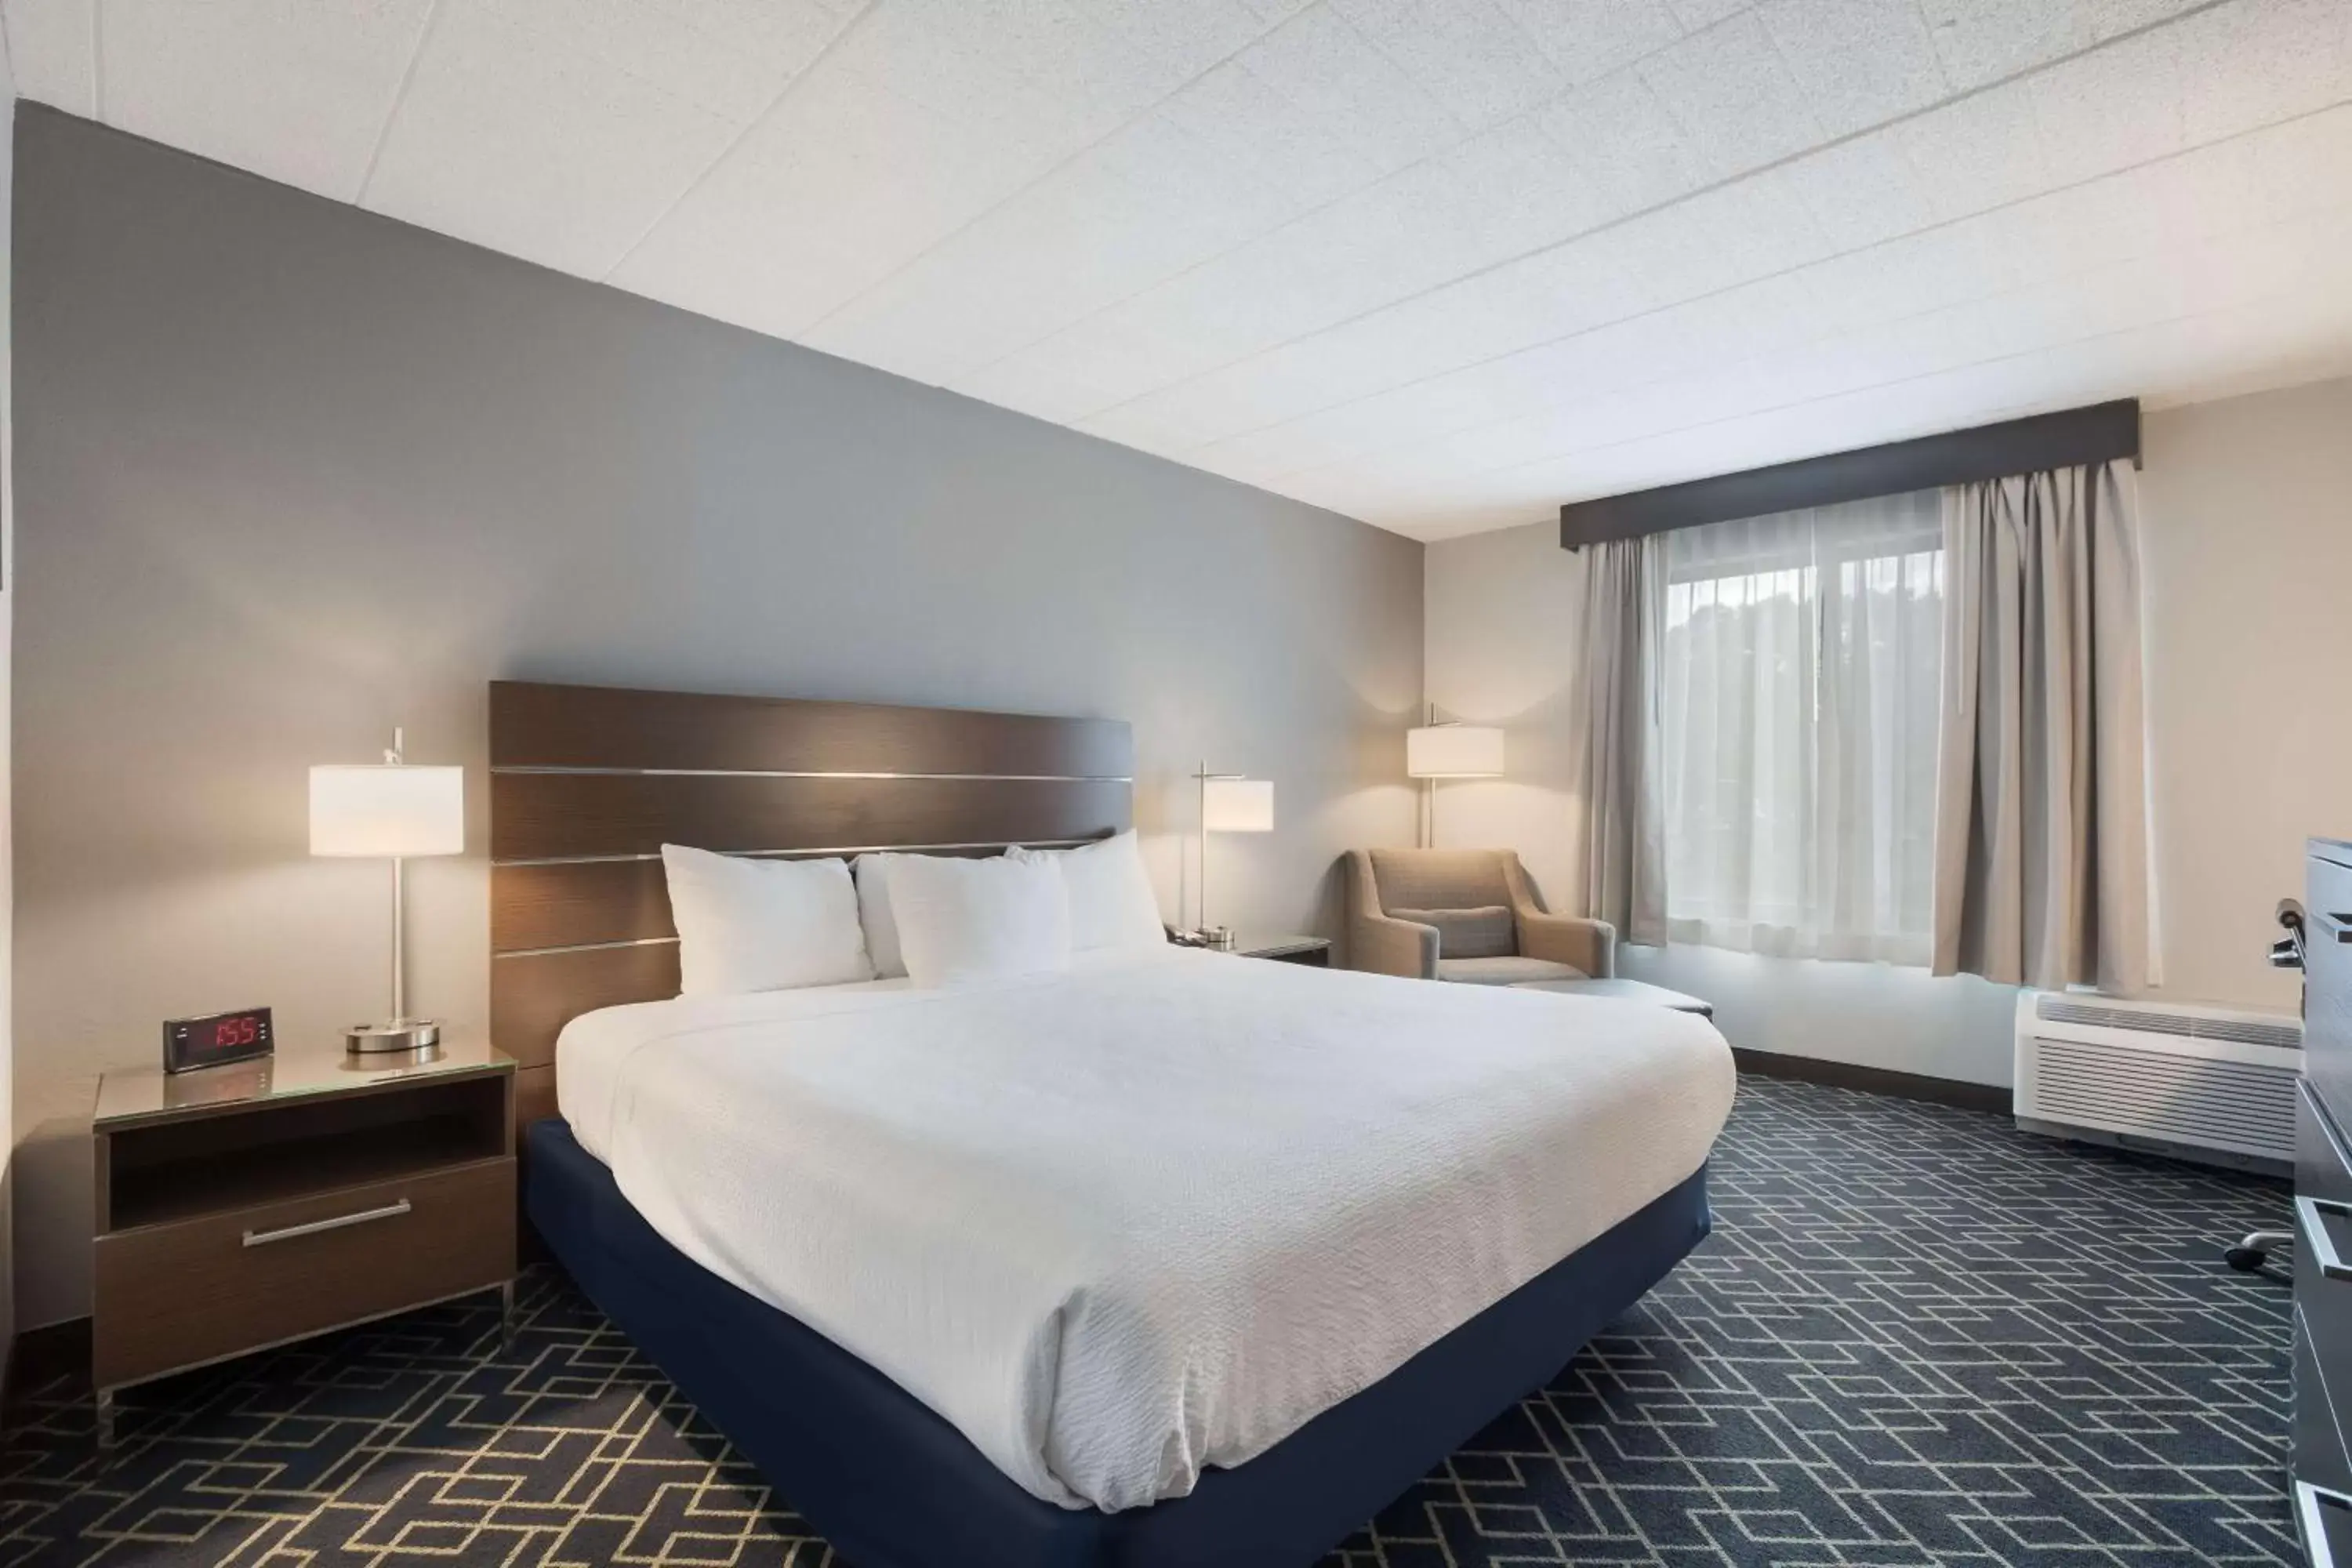 Bedroom, Bed in Best Western Hunt's Landing Hotel Matamoras Milford